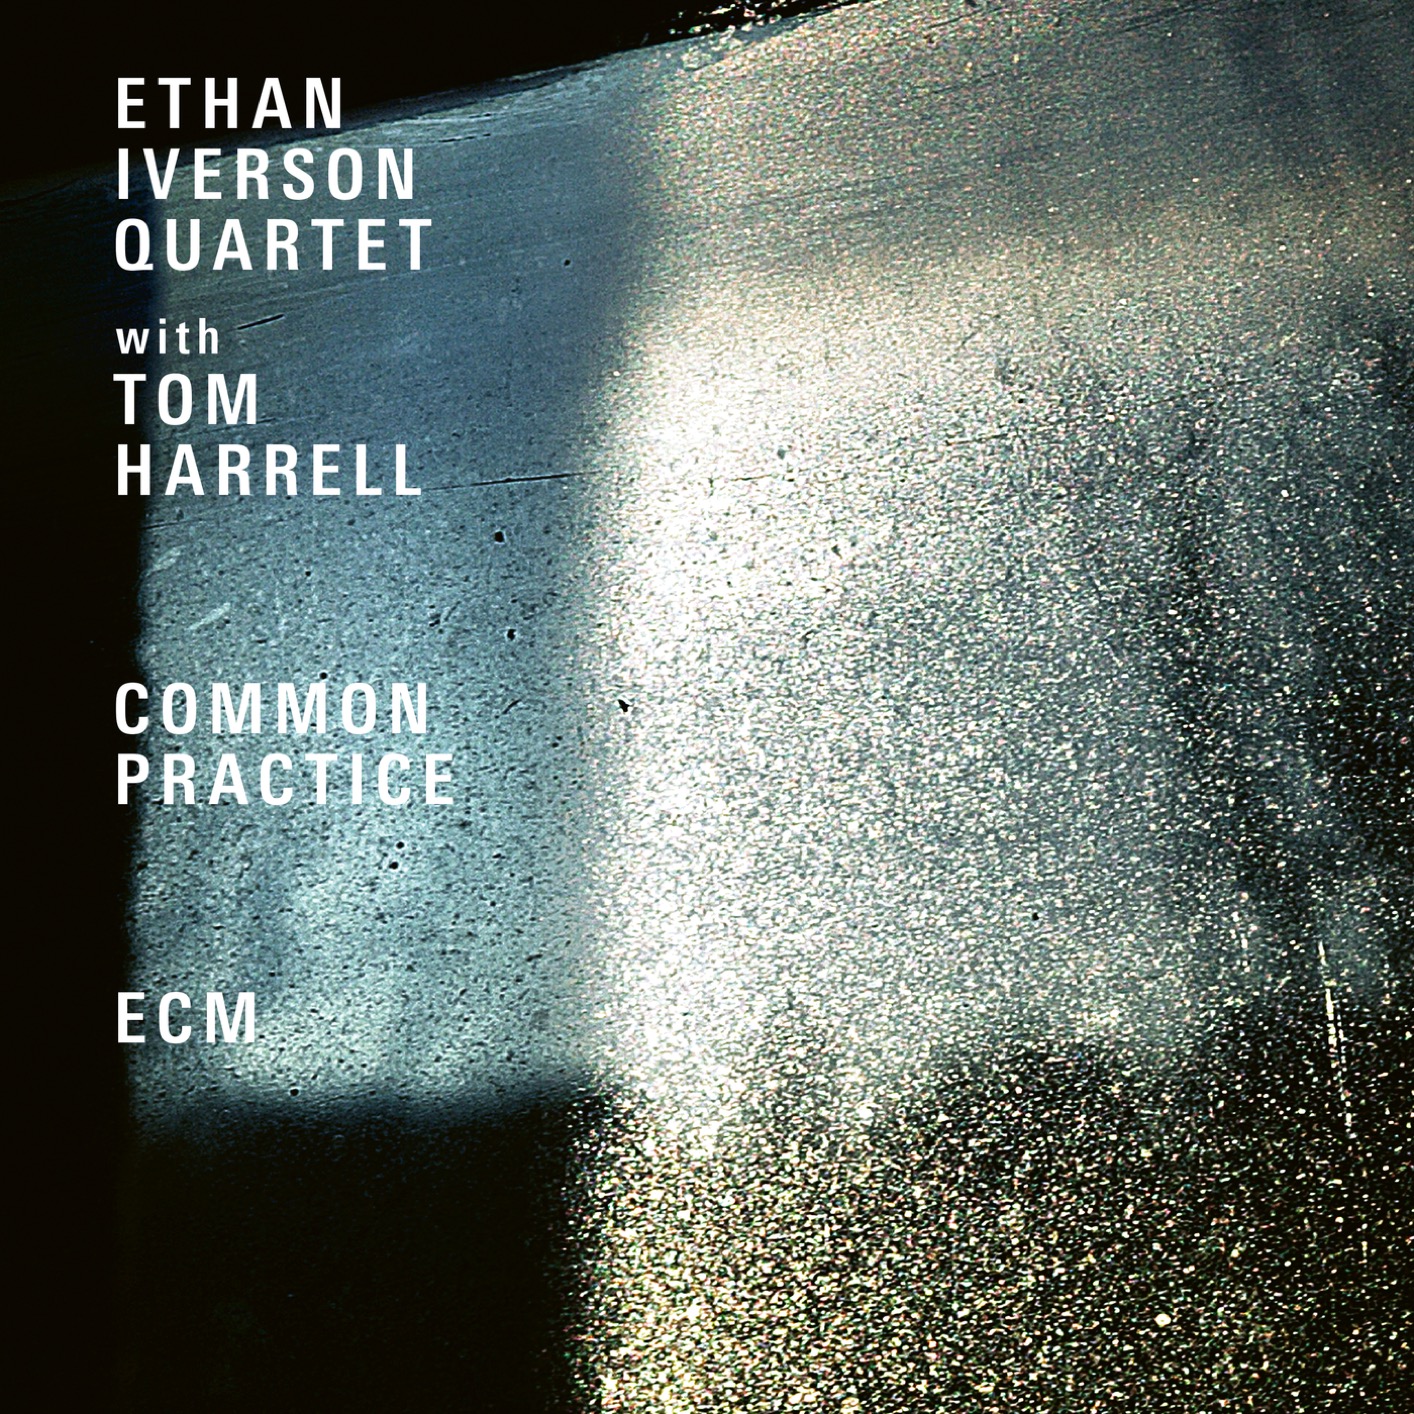 Ethan Iverson Quartet - Common Practice (Live At The Village Vanguard - 2017) (2019) [FLAC 24bit/96kHz]